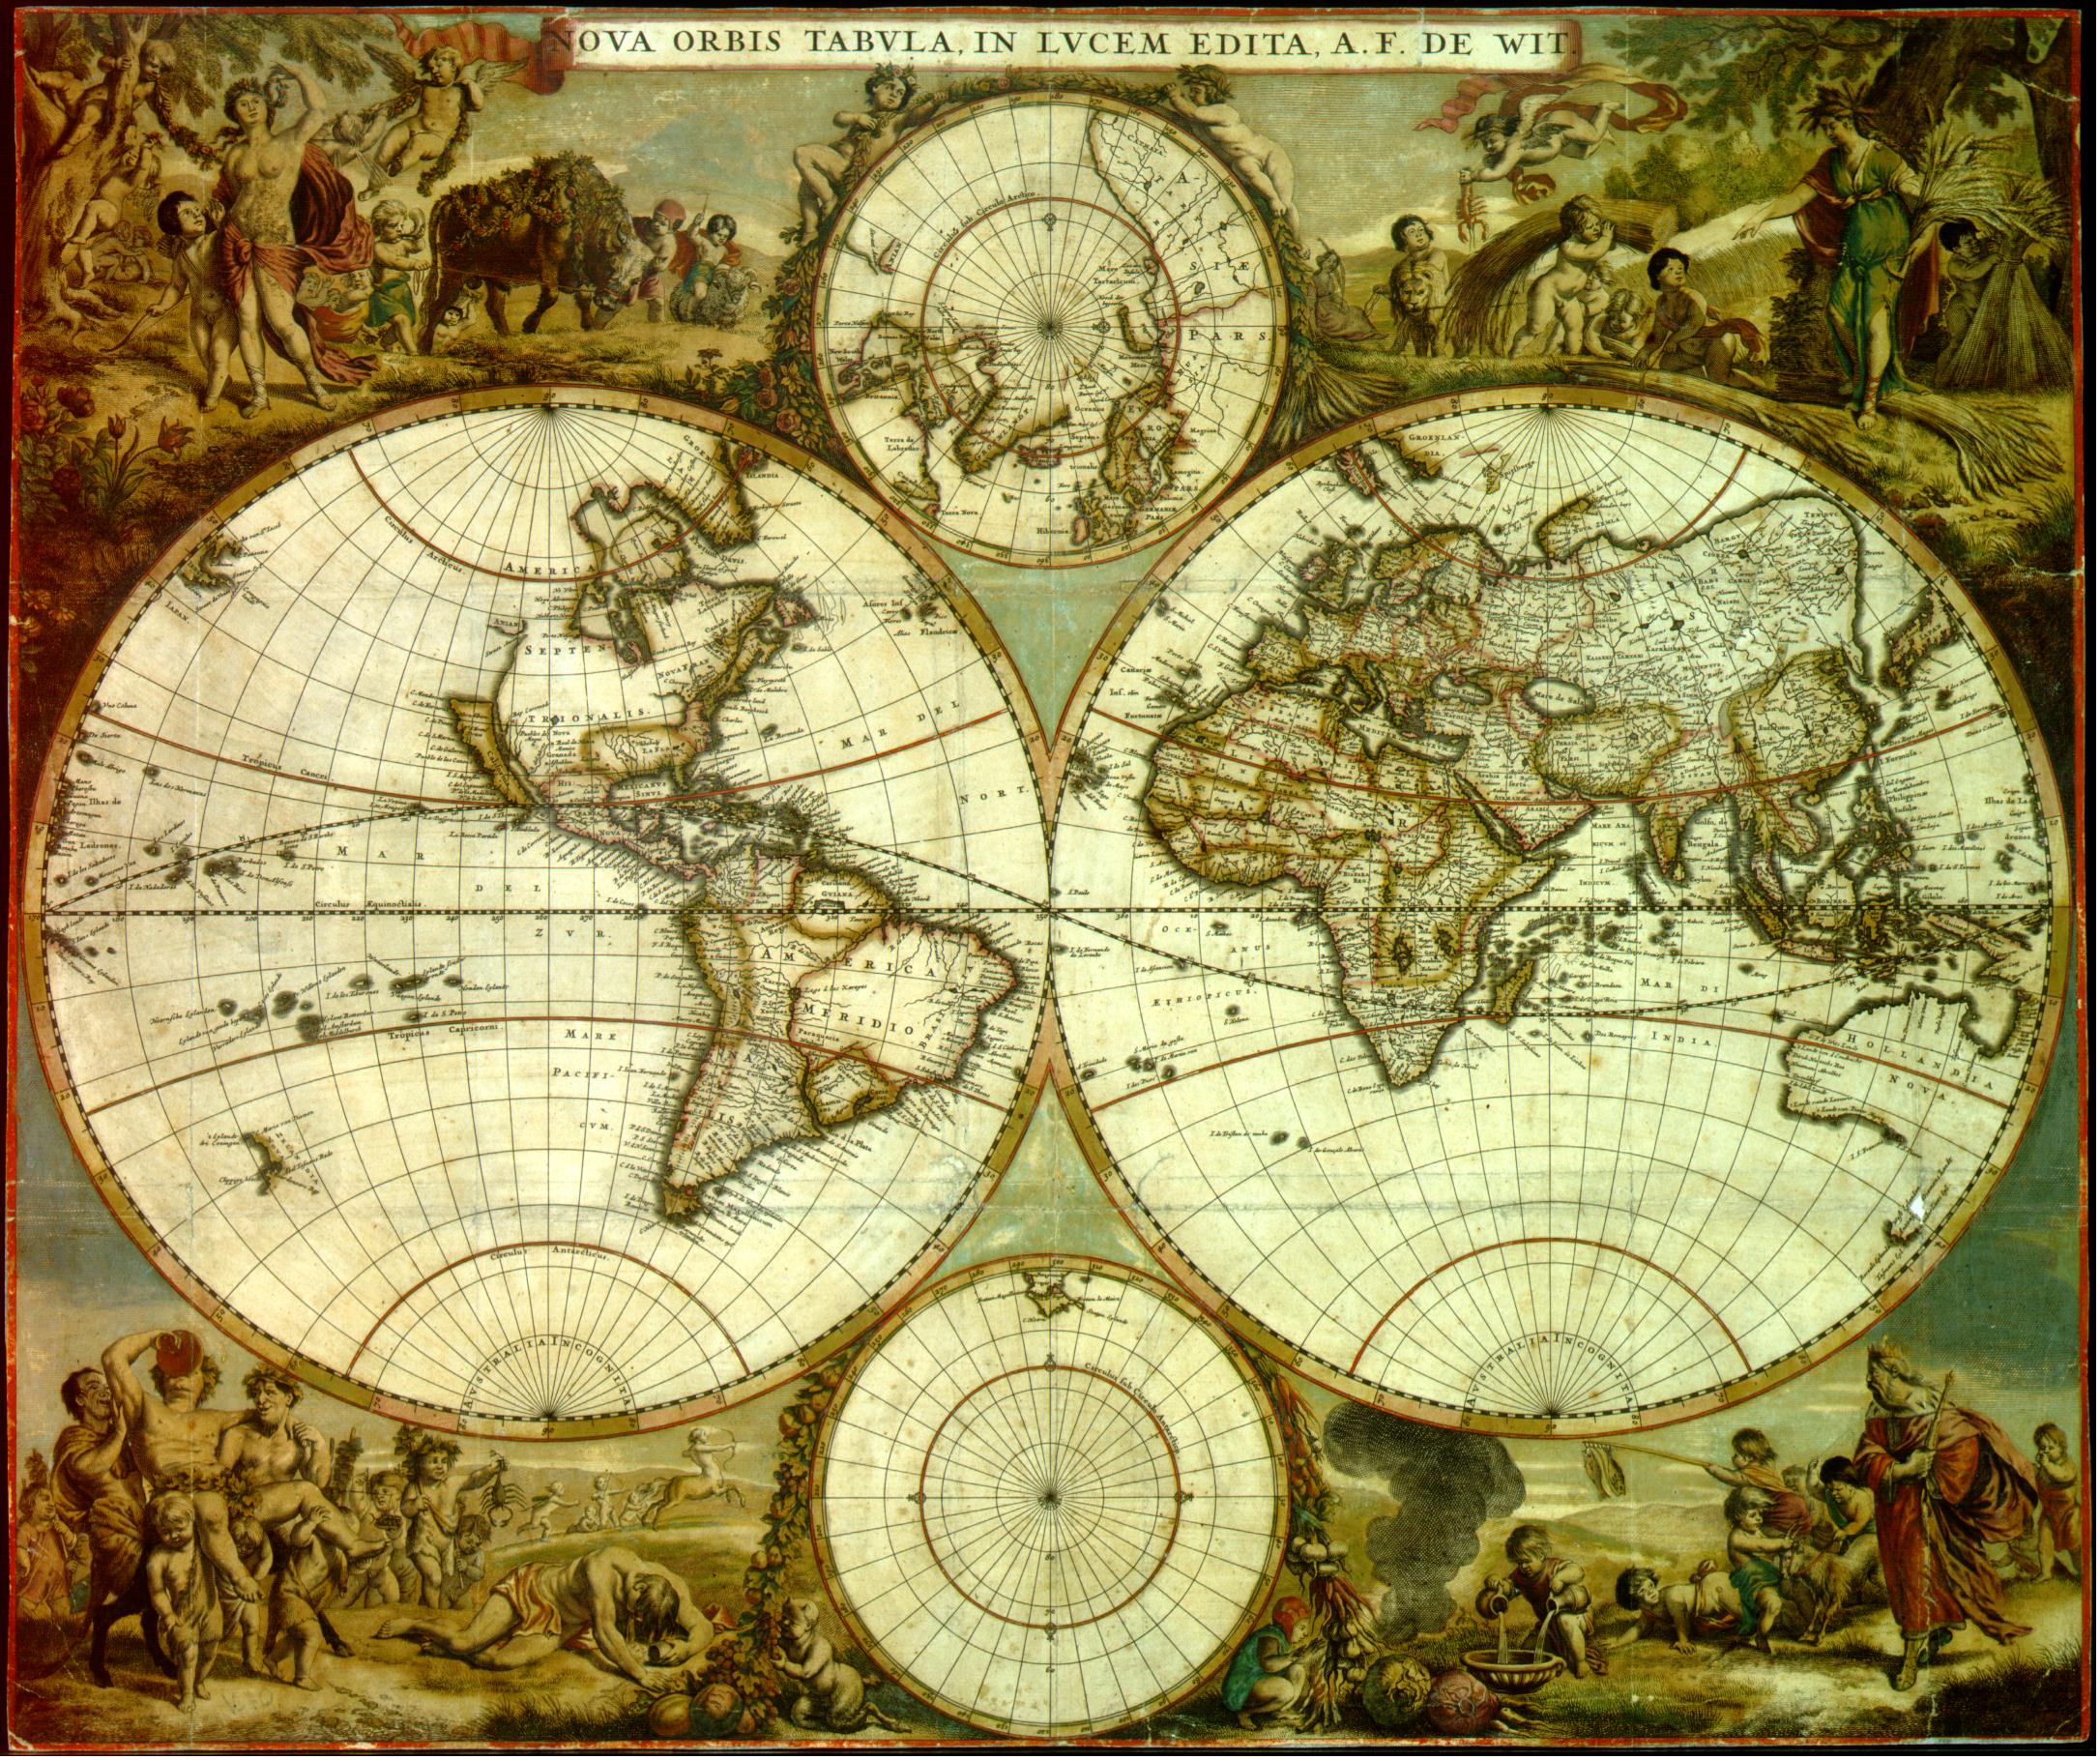 Mapa del Mundo, Nova Orbis Tabula 1662